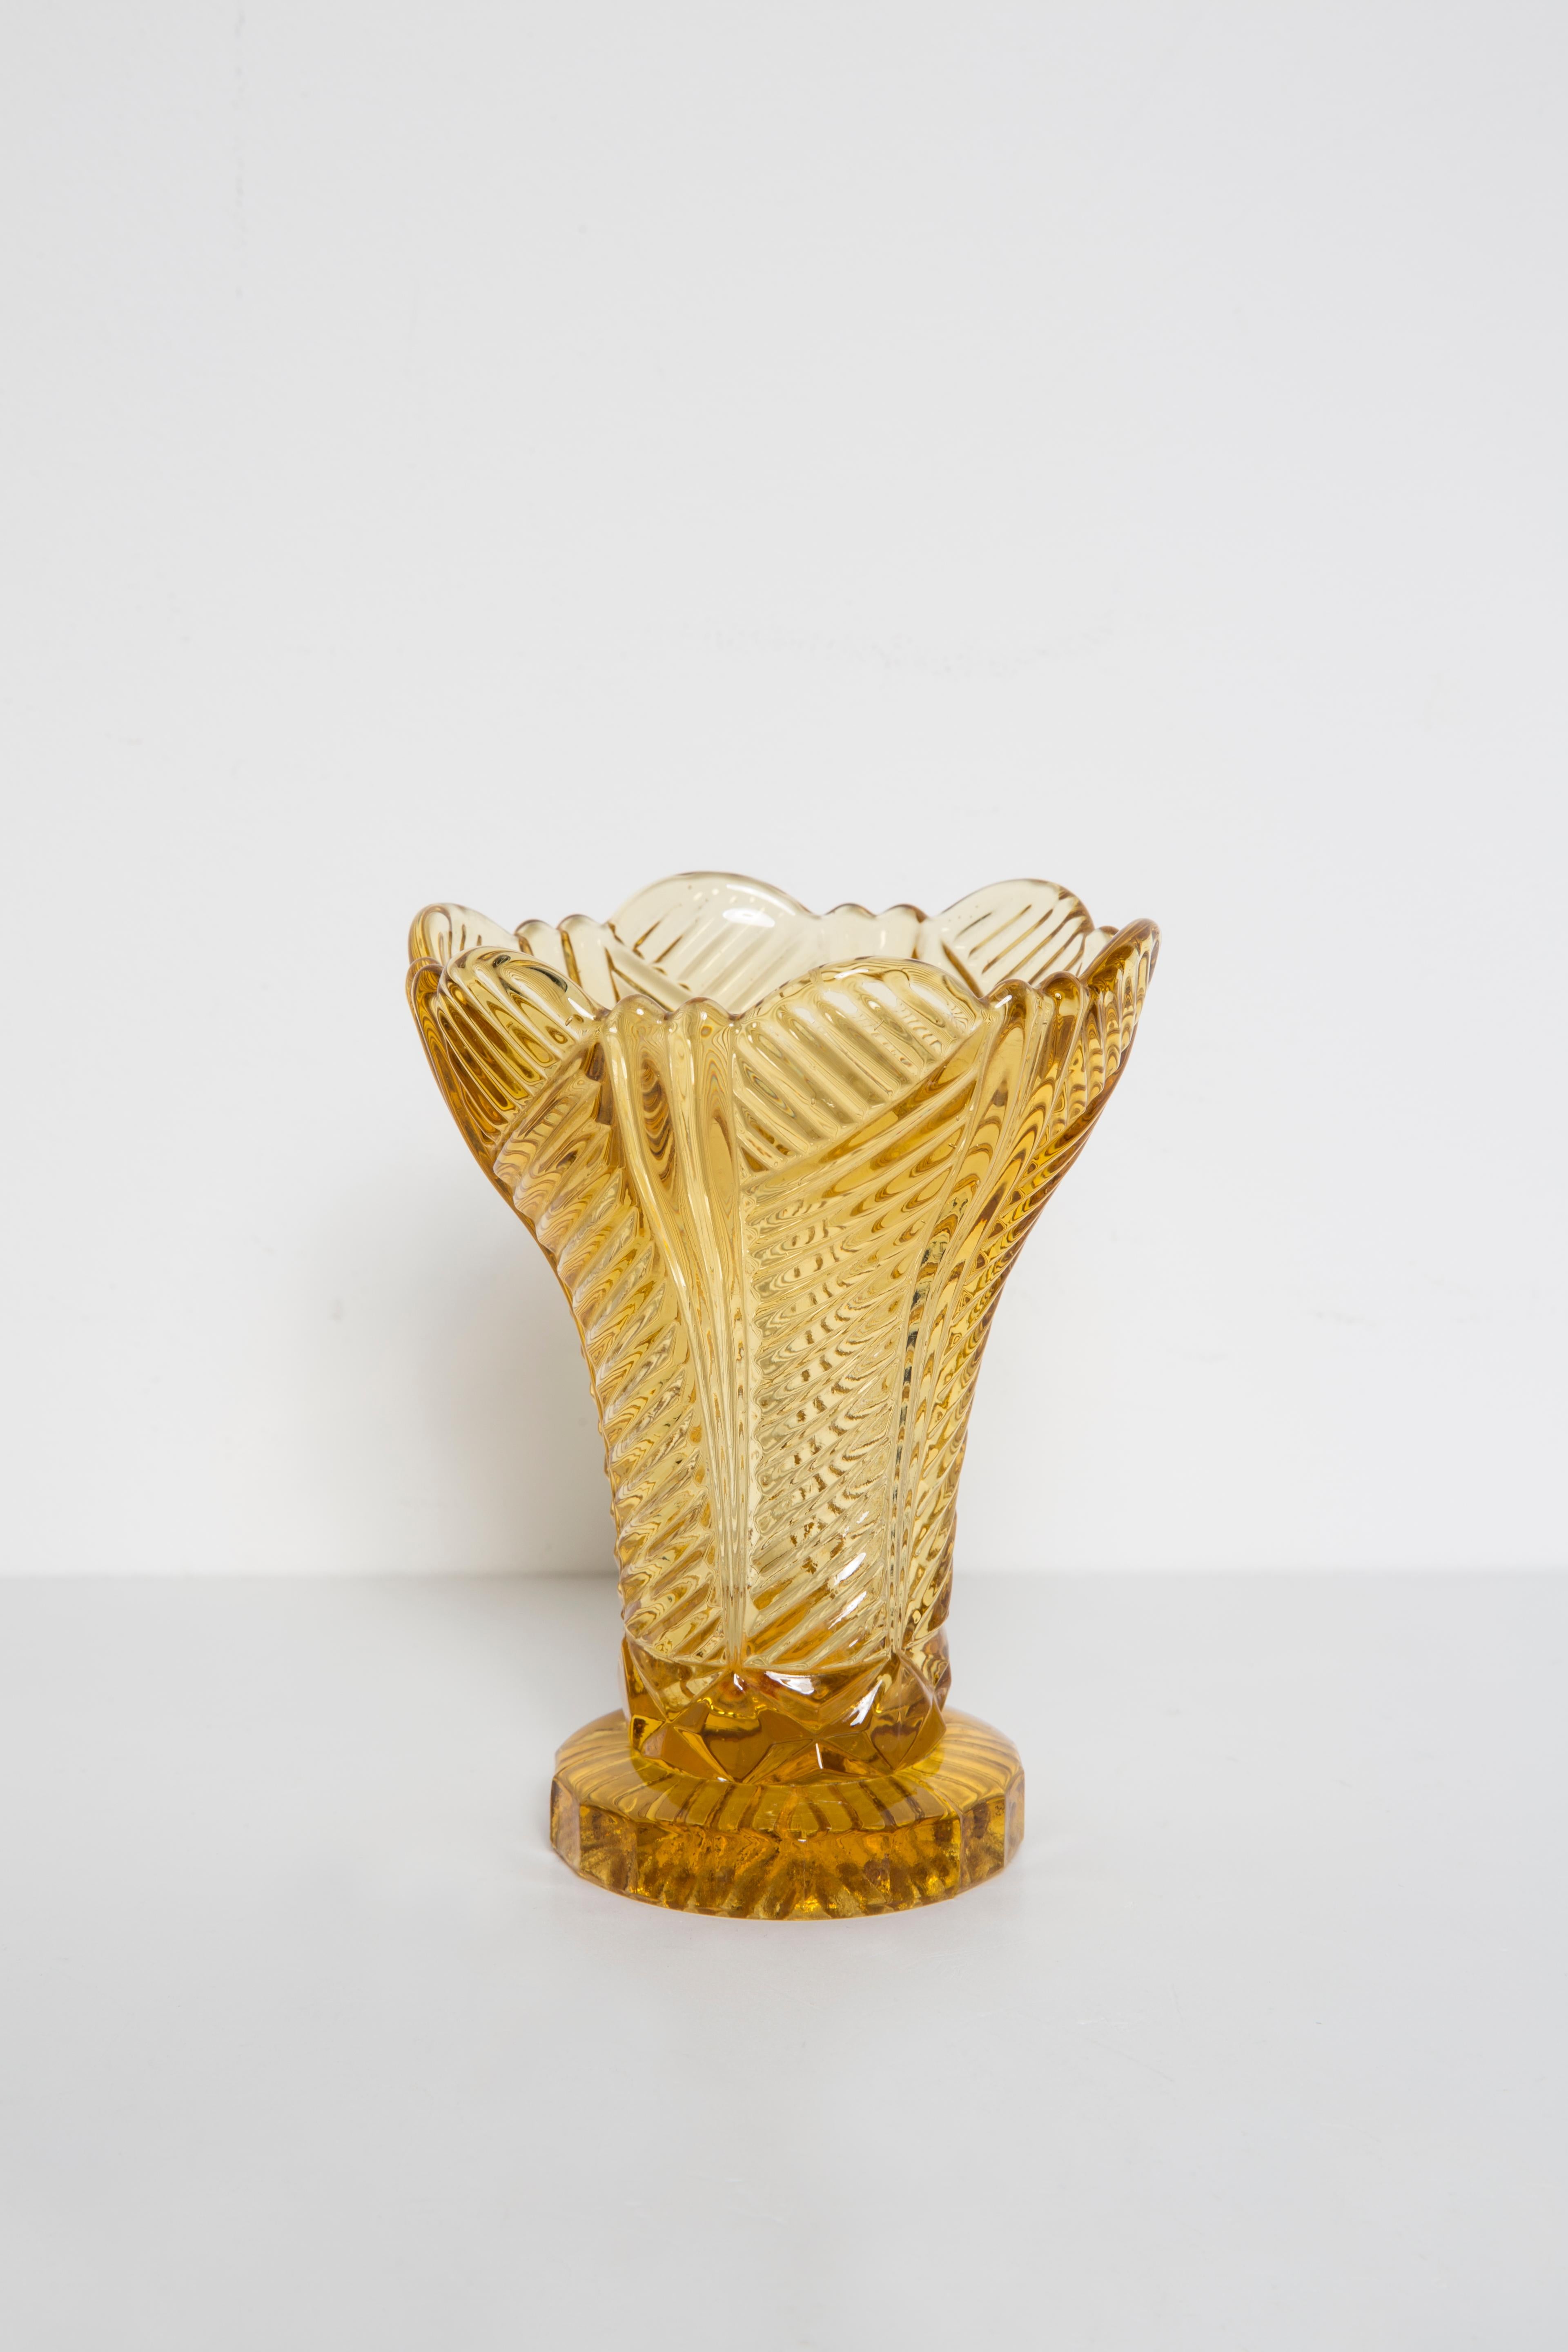 Produziert in den 1960er Jahren.

Gepresstes Glas in perfektem Zustand.
Die Vase sieht aus, als wäre sie gerade erst aus der Schachtel genommen worden.
Das Bild spiegelt die Farbe wider, in der es sich live präsentiert.

Keine Zacken, Mängel etc.